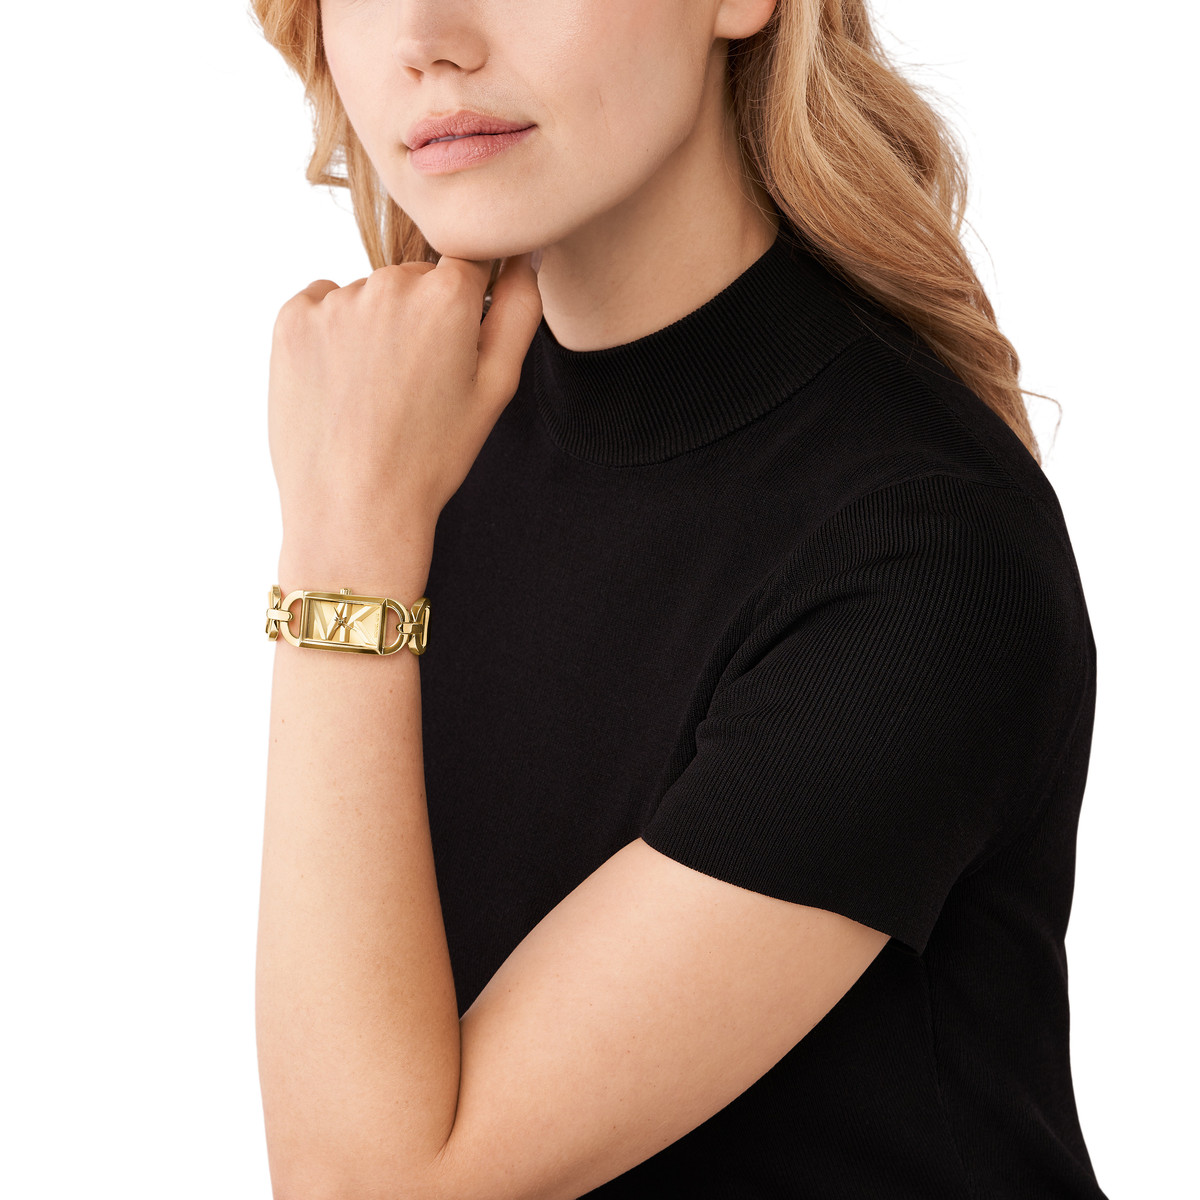 Montre MICHAEL KORS mk empire femme bracelet acier inoxydable doré - vue porté 1